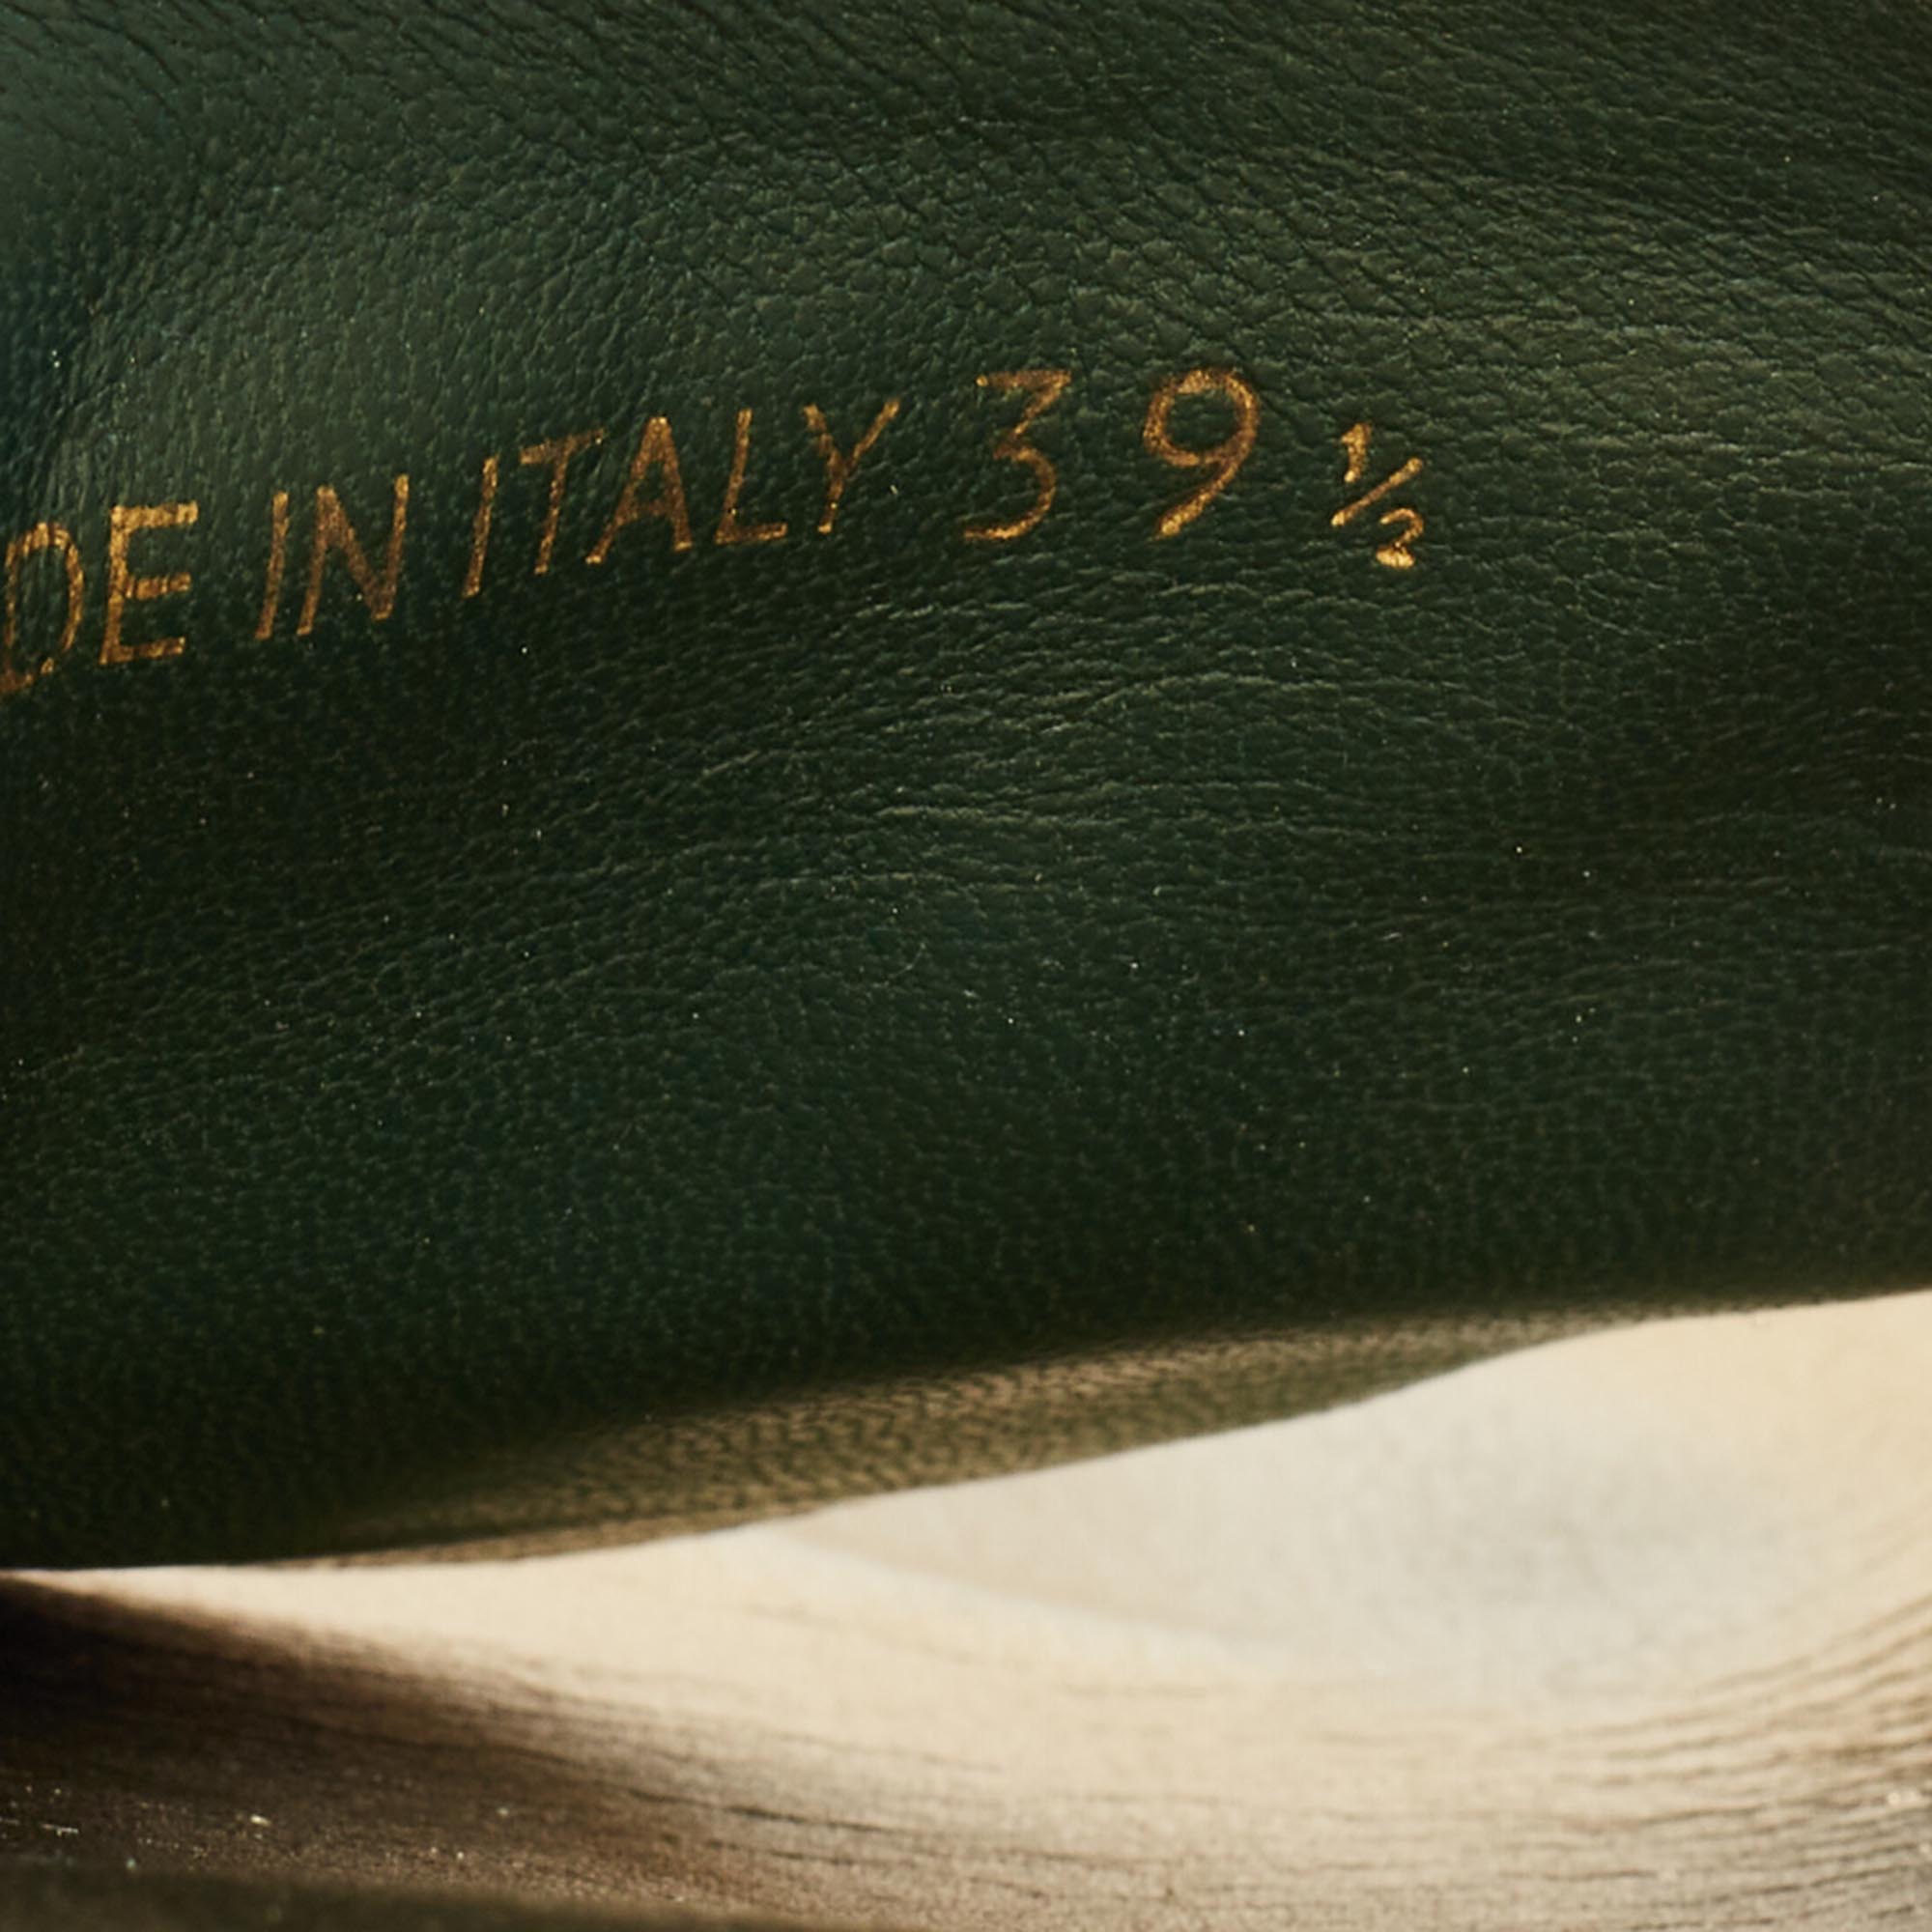 Prada Green/Gold Velvet And Leather Buckle Detail Slides Sizes 39.5